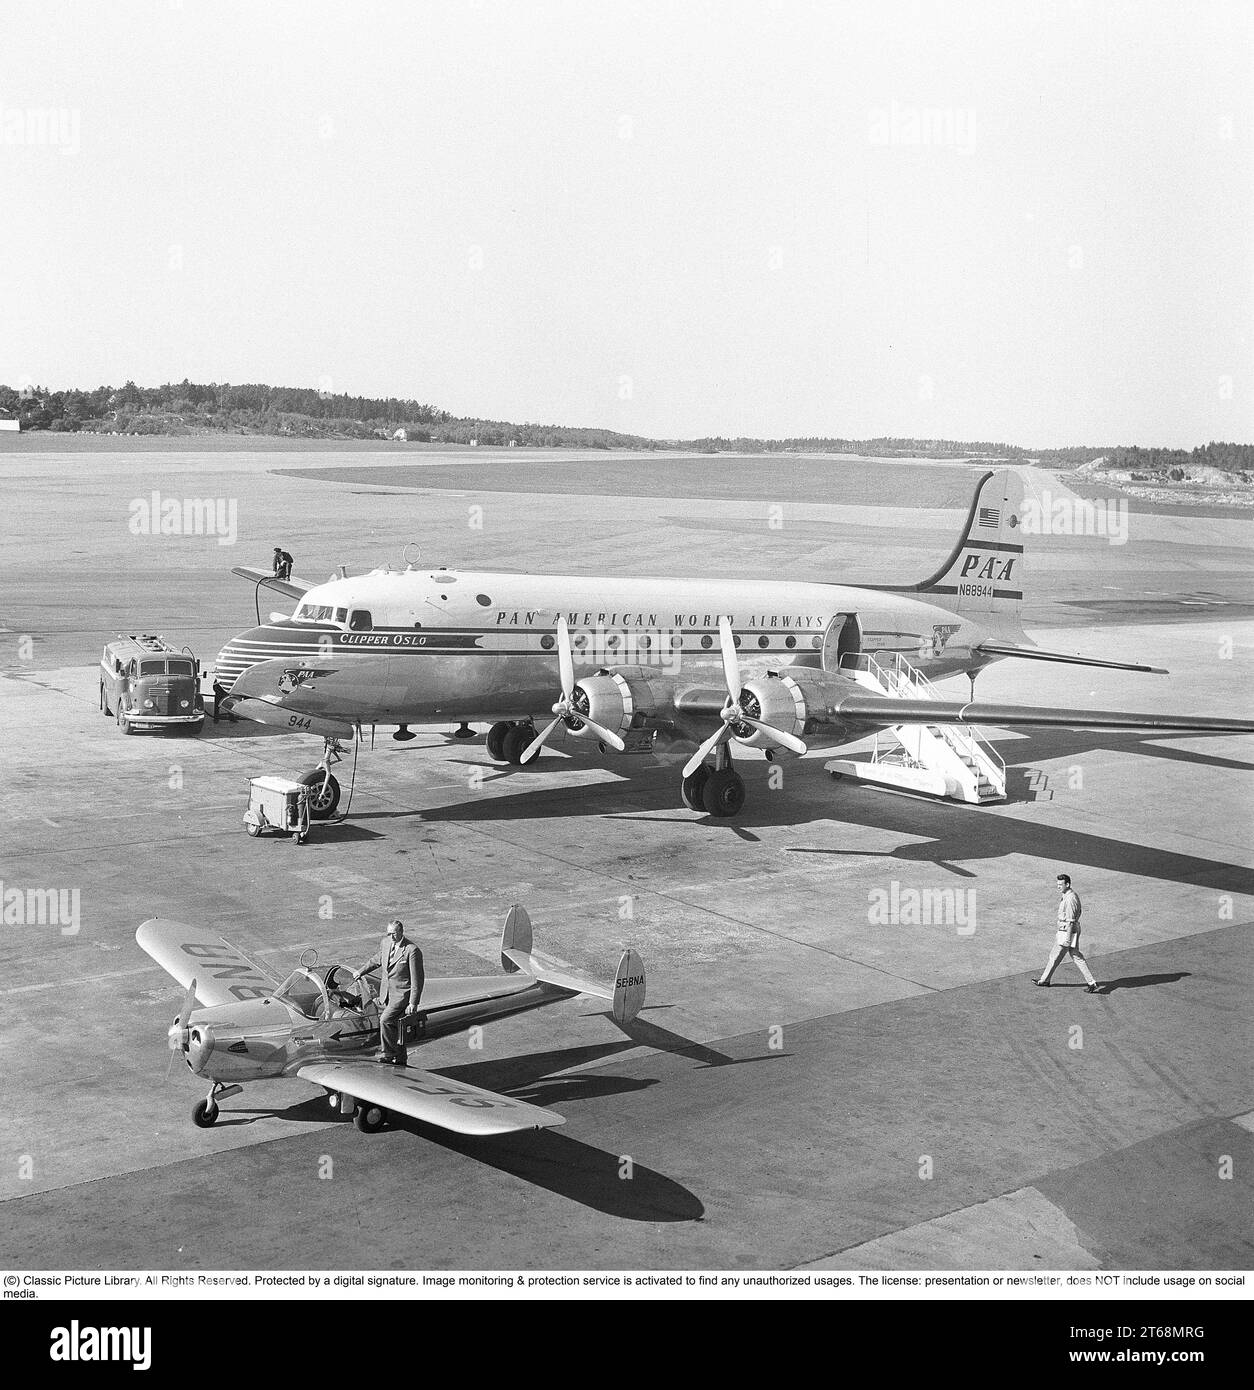 Flughafen der 1950er Jahre. Ein Douglas DC-4 von Pan American World Airways 'Clipper Oslo' PA-A N88944 wird vorbereitet und vor dem Start betankt. Am Flügel am Ende der Gasleitung vom Lkw ist ein Mann zu sehen. Das kleinere Propellerflugzeug ist eine Ercoupe 415 SE-BNA mit einem Mann mit Aktentasche, der kurz davor steht, in das Flugzeug einzusteigen. Schweden 1953. Kristoffersson Ref. BM42-3 Stockfoto